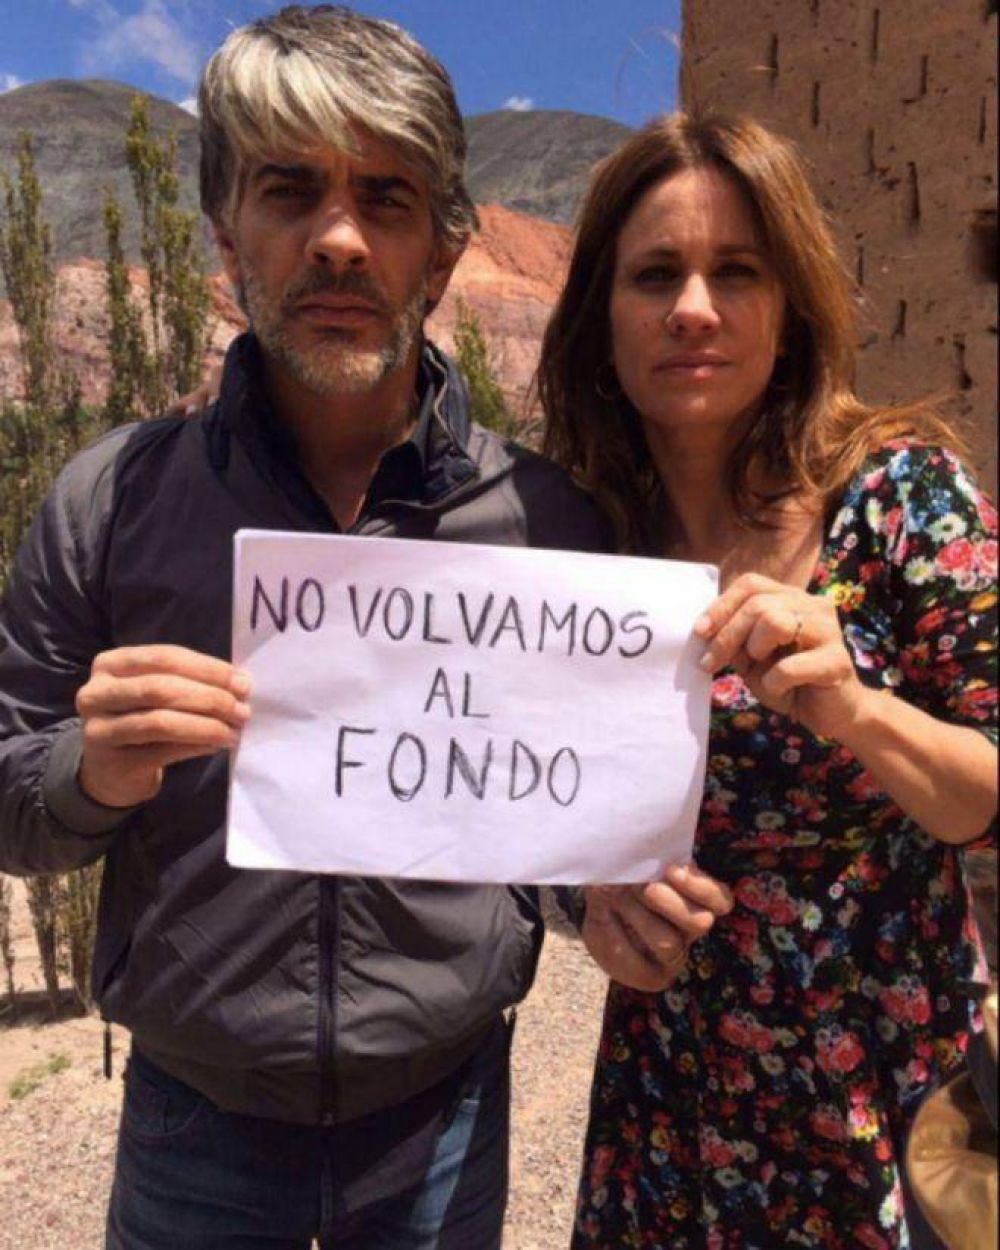 Cristina retuite el video de los artistas que rechazan un acuerdo con los fondos buitre